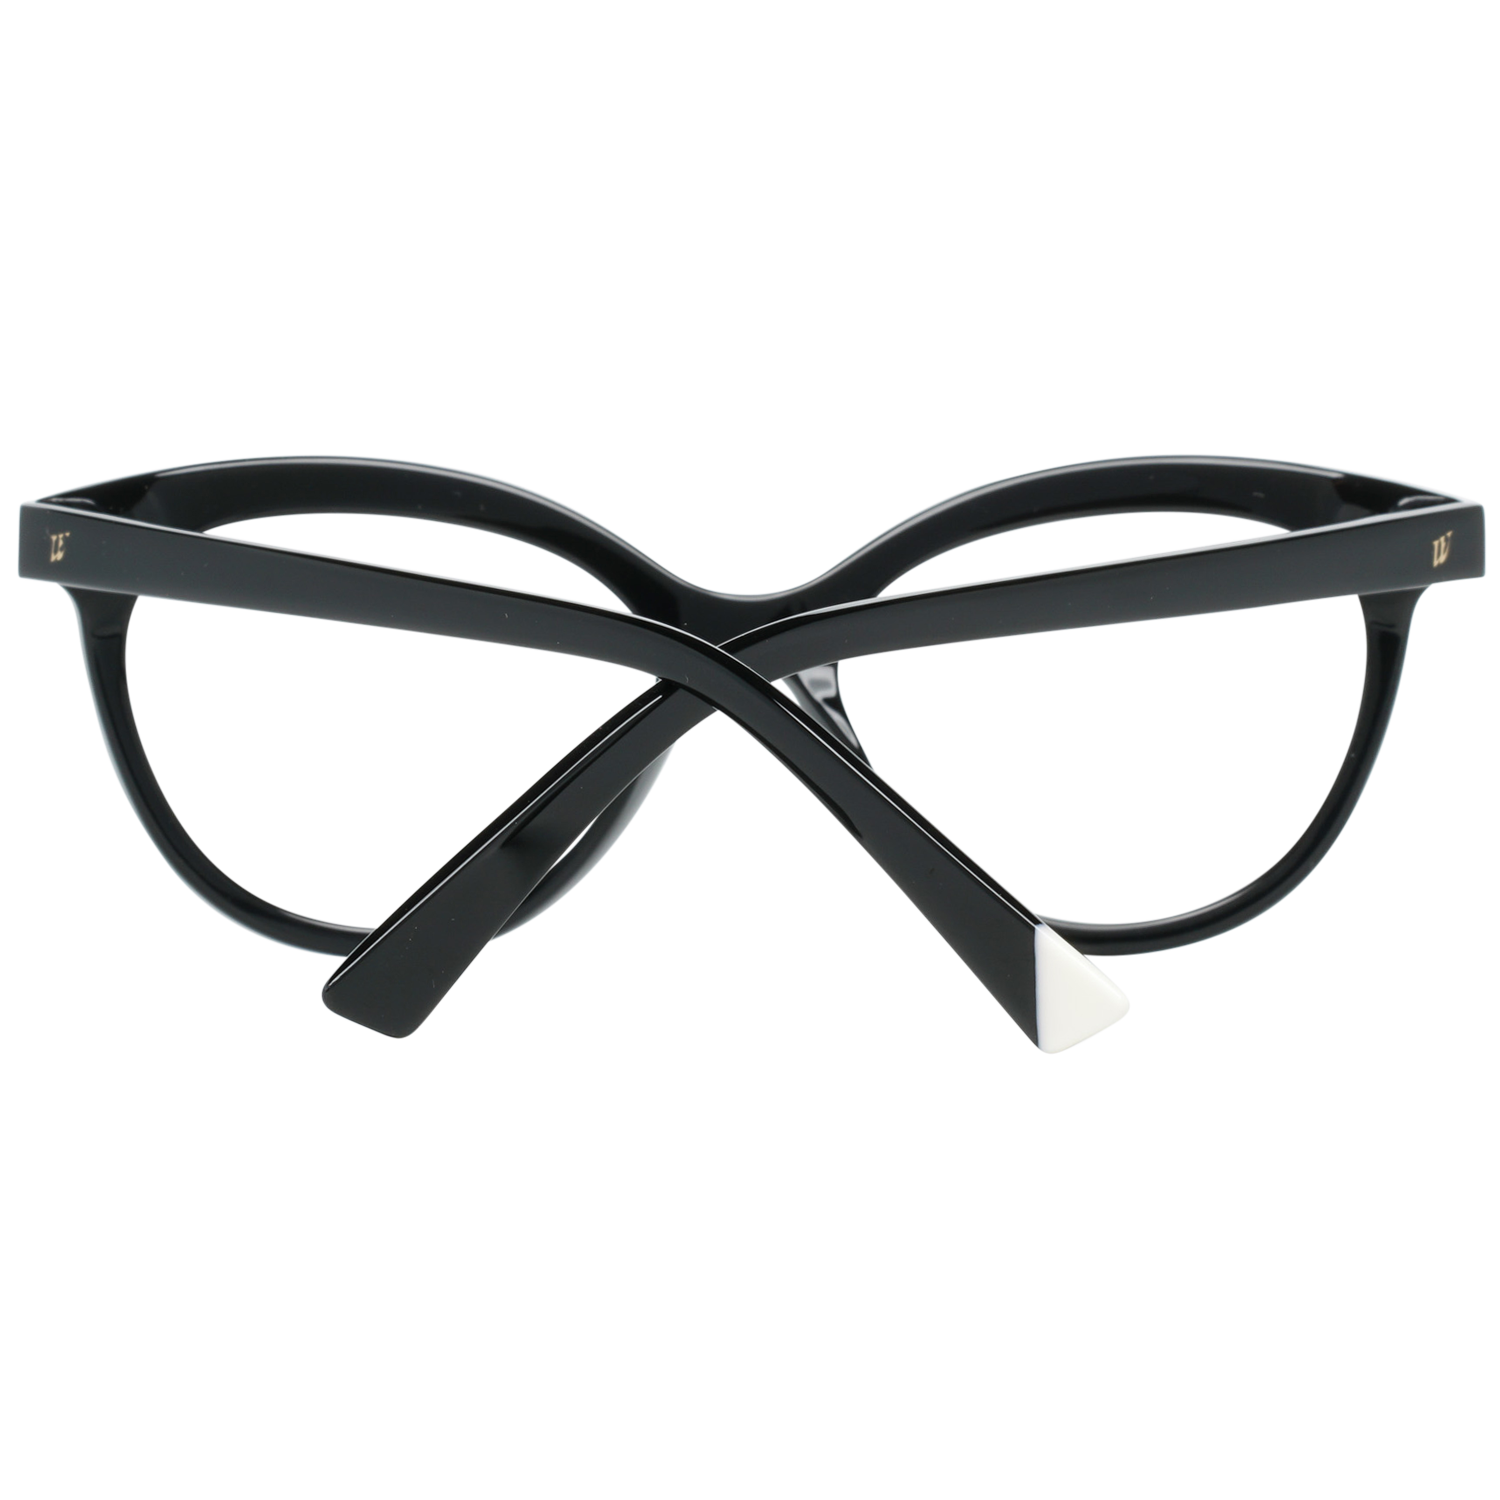 Web Frames Web Glasses Optical Frame WE5250 001 51 Eyeglasses Eyewear UK USA Australia 